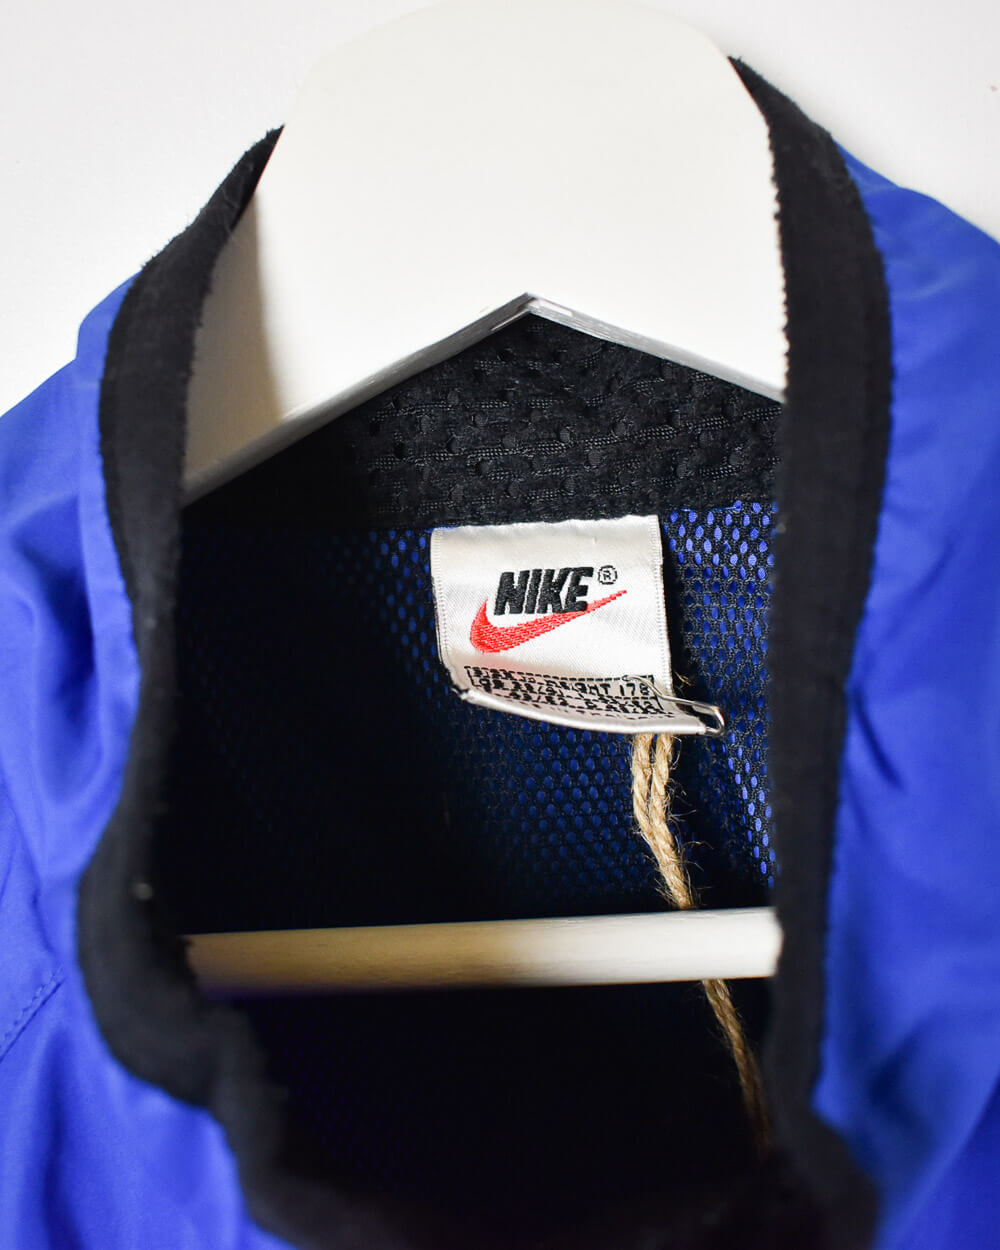 Blue Nike Windbreaker Jacket - Medium